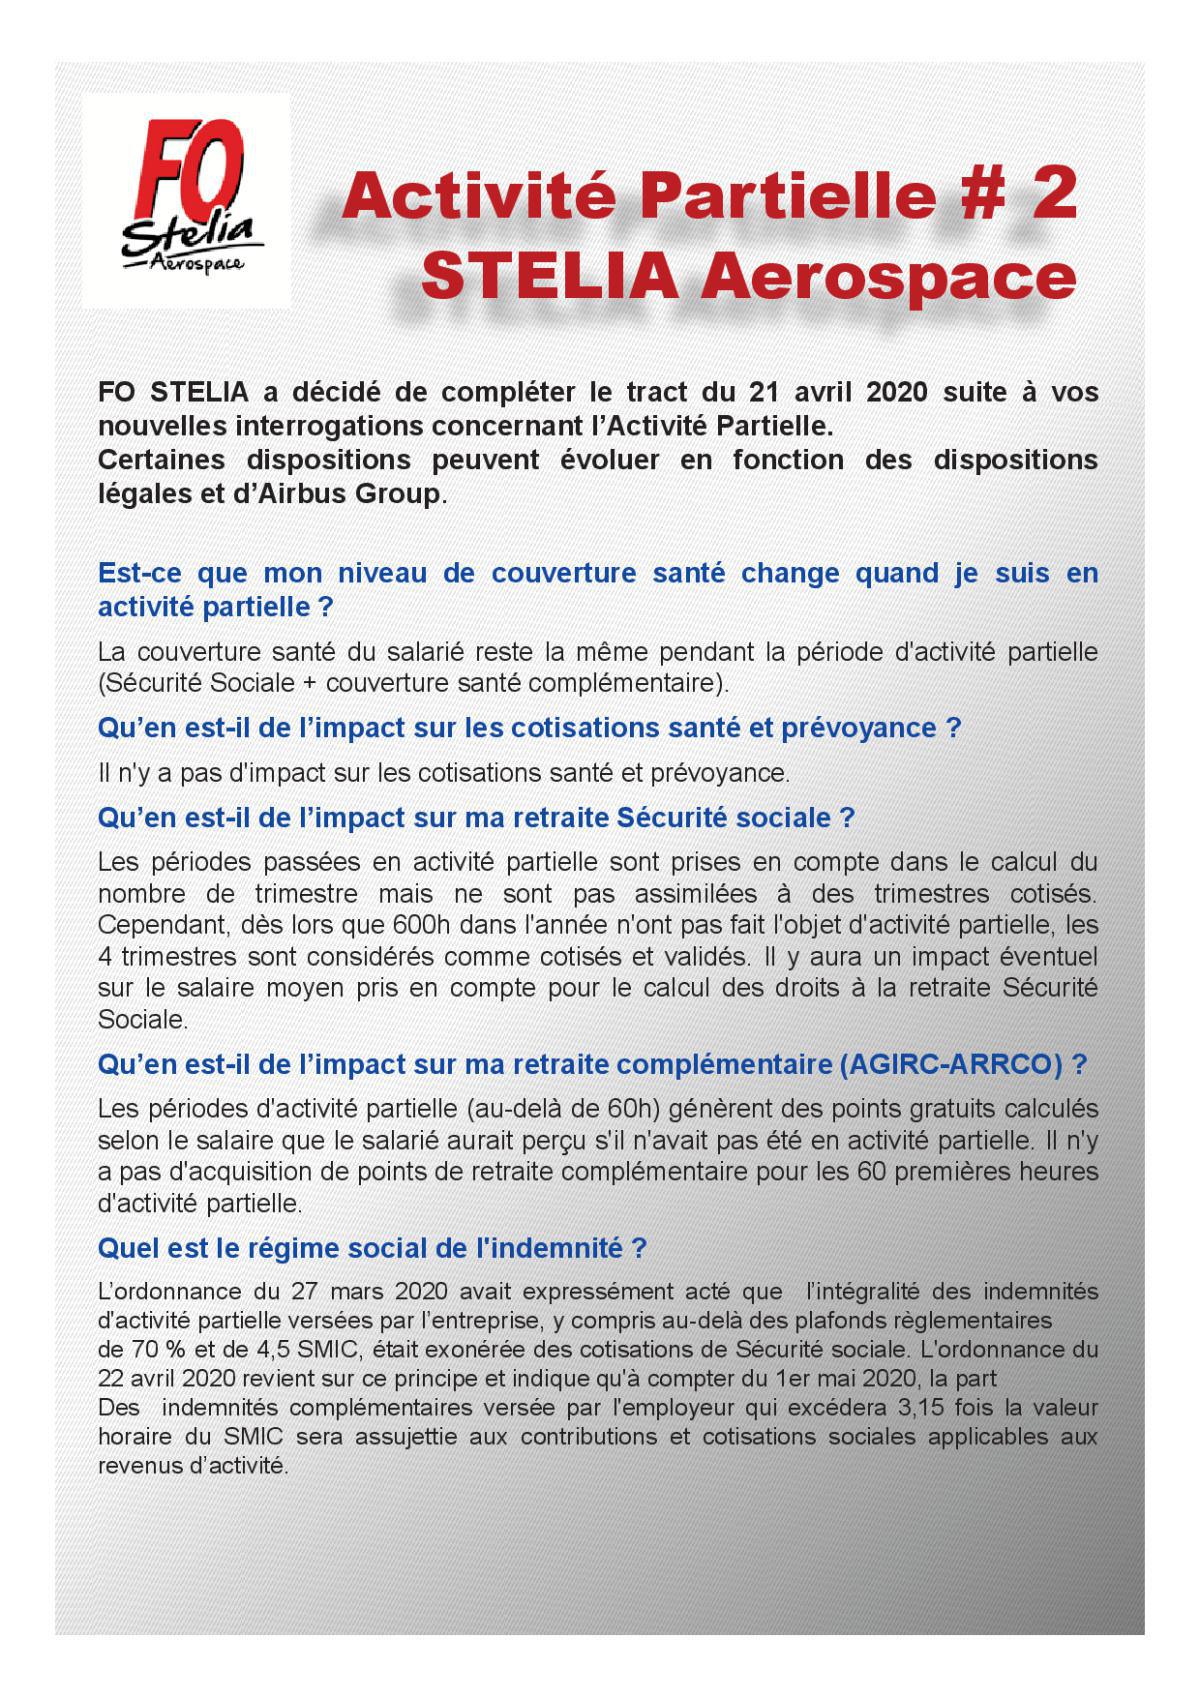 Activité Partielle #2 - STELIA Aerospace